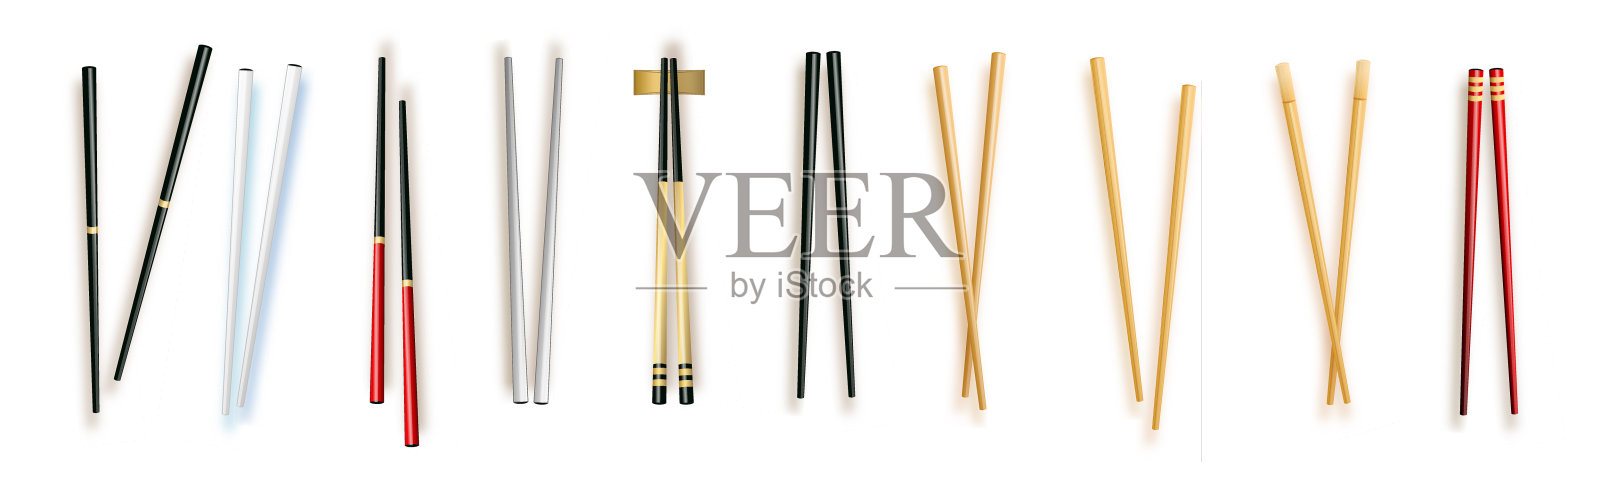 逼真的3d食物筷子设置不同类型。矢量插图的传统亚洲竹用具彩色筷子插画图片素材